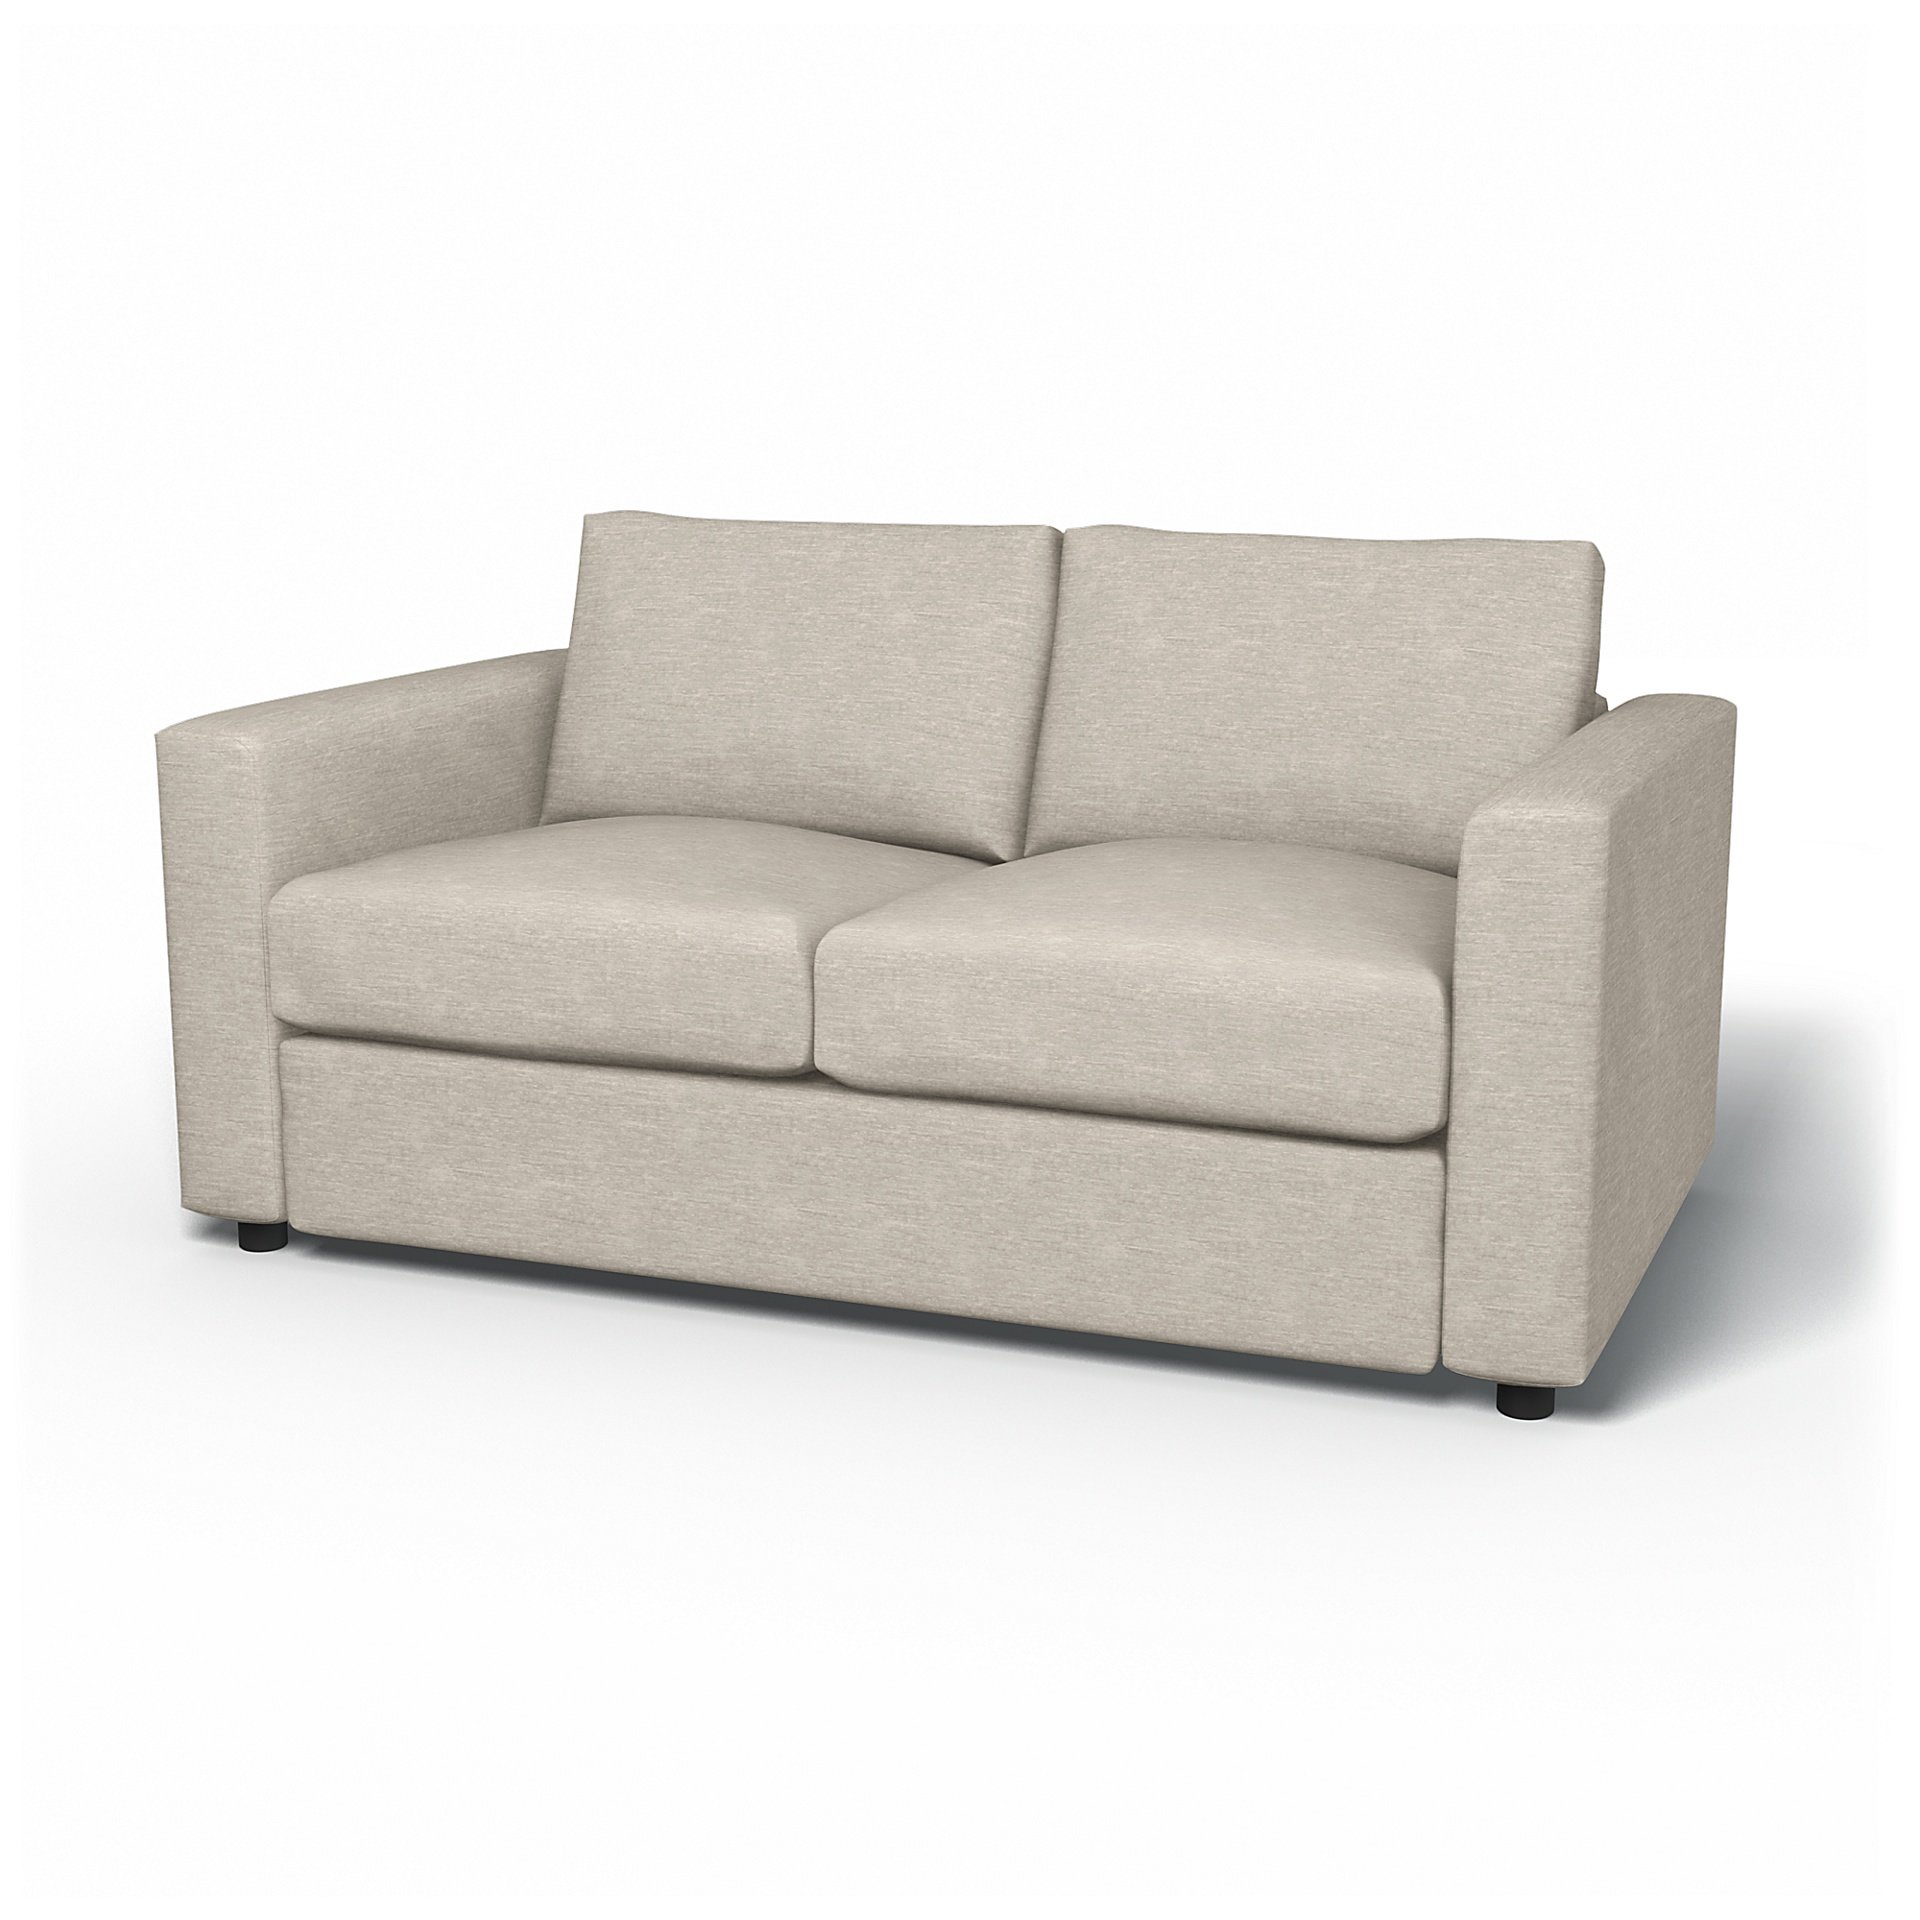 IKEA - Vimle 2 Seater Sofa Cover, Natural White, Velvet - Bemz